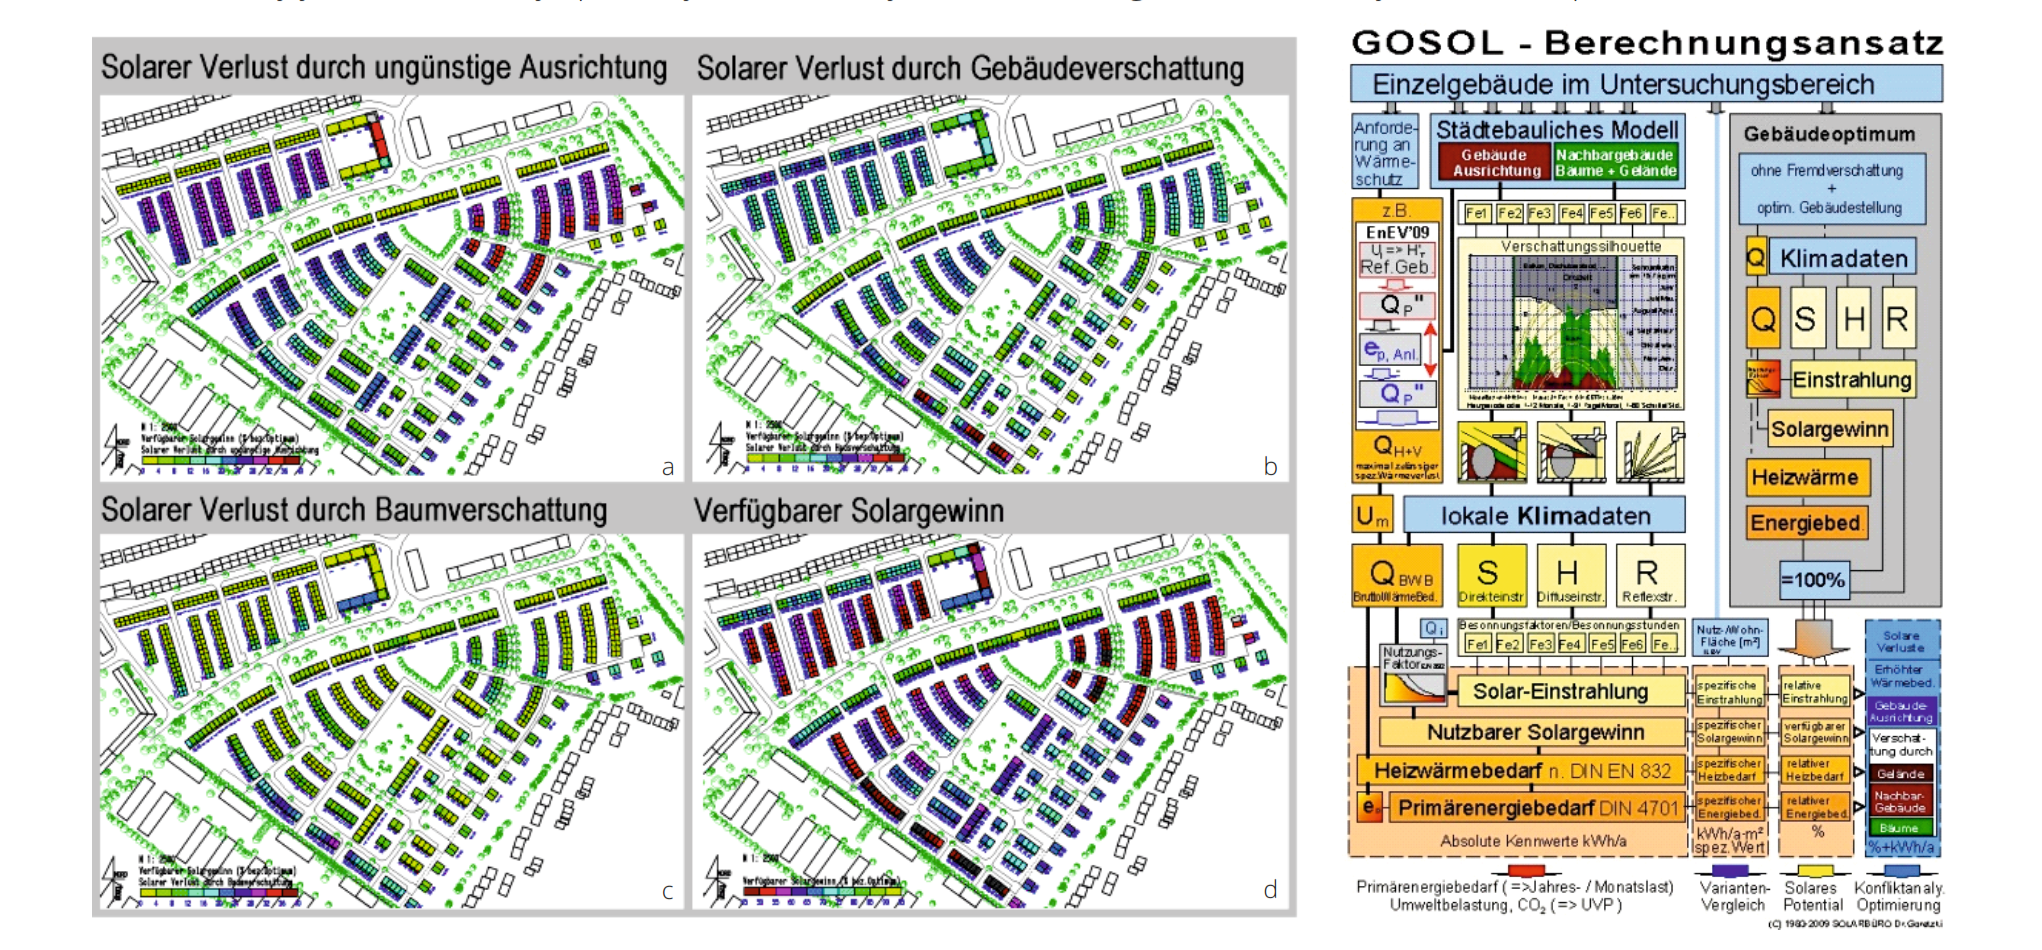 GOSOL – softvér určený na určovanie urbánneho solárneho potenciálu, ktorý vypracoval Peter Goretzki. Vľavo je zobrazený výstup analýzy územia (a – solárne straty dôsledkom nevhodnej orientácie; b – solárne straty dôsledkom zatienenia budovami; c – solárne straty dôsledkom tienenia stromami; d – dostupný solárny zisk). Vpravo je naznačená schéma vstupov, analýz a výstupov tohto programu.